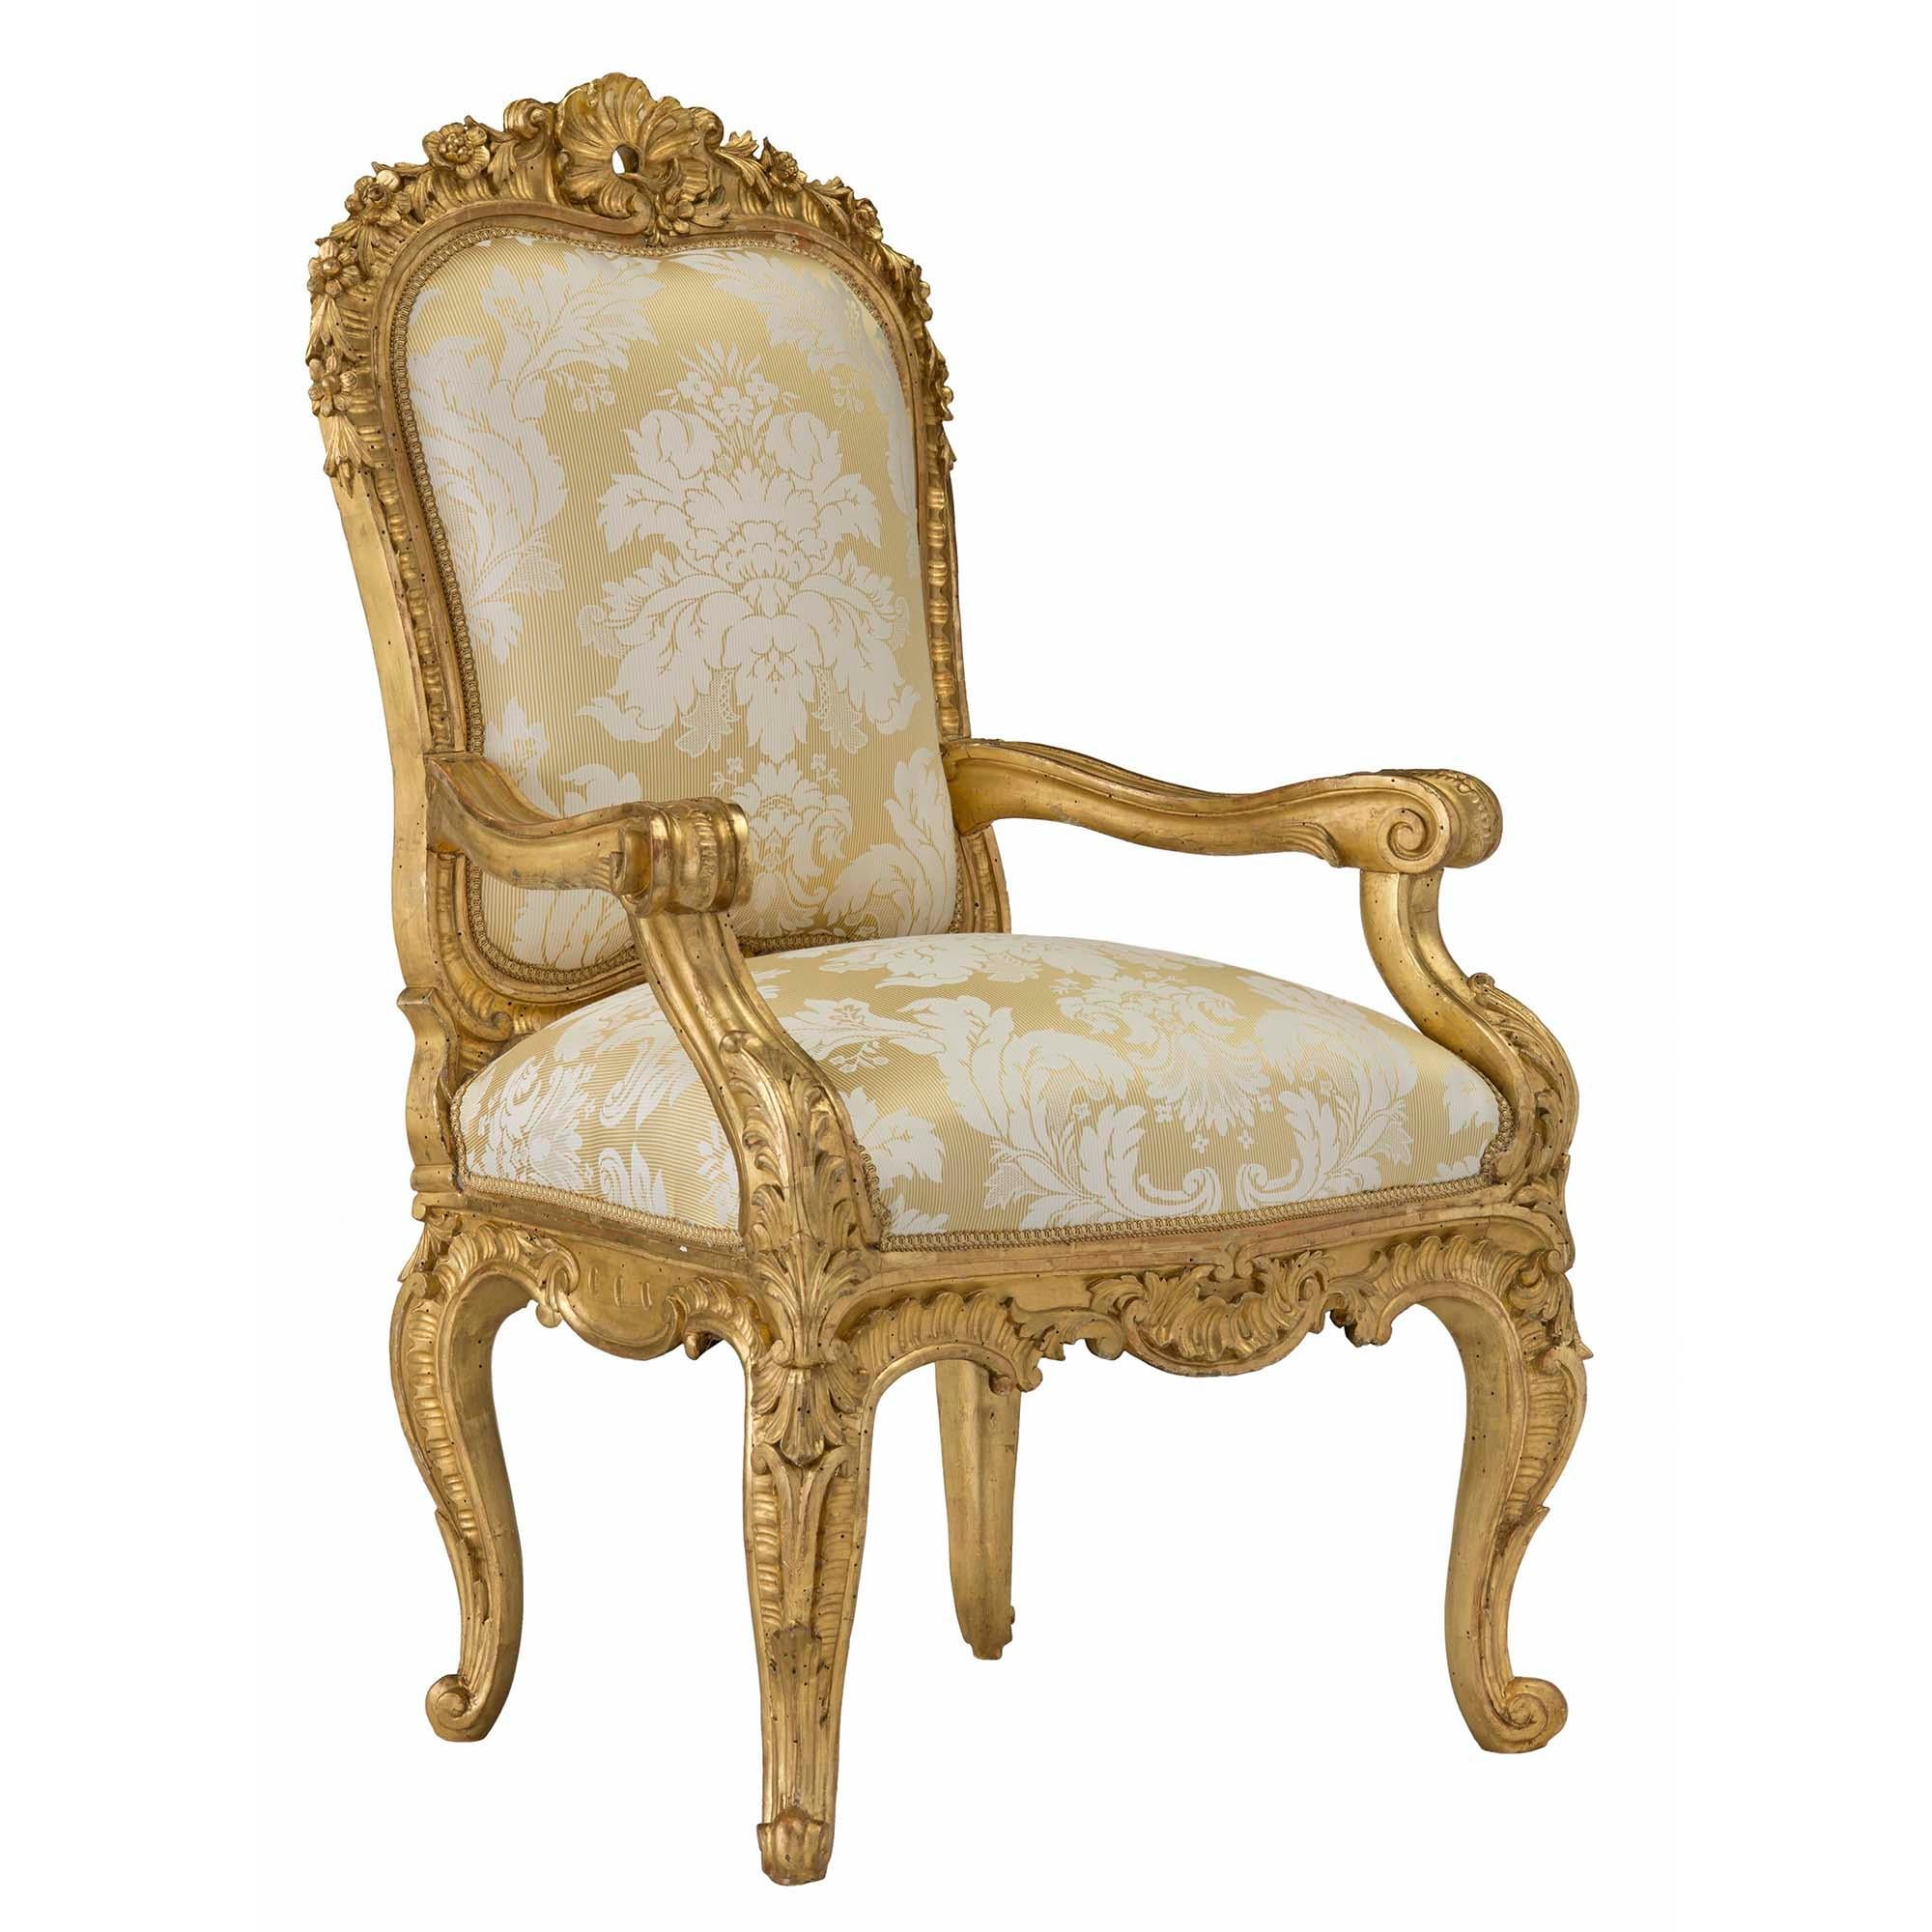 Paire de magnifiques fauteuils trône en bois doré d'époque Louis XV italienne du XVIIIe siècle, de grande qualité. Chaque chaise finement sculptée repose sur des pieds cabriole accentués par de grandes feuilles d'acanthe. La frise à volutes est